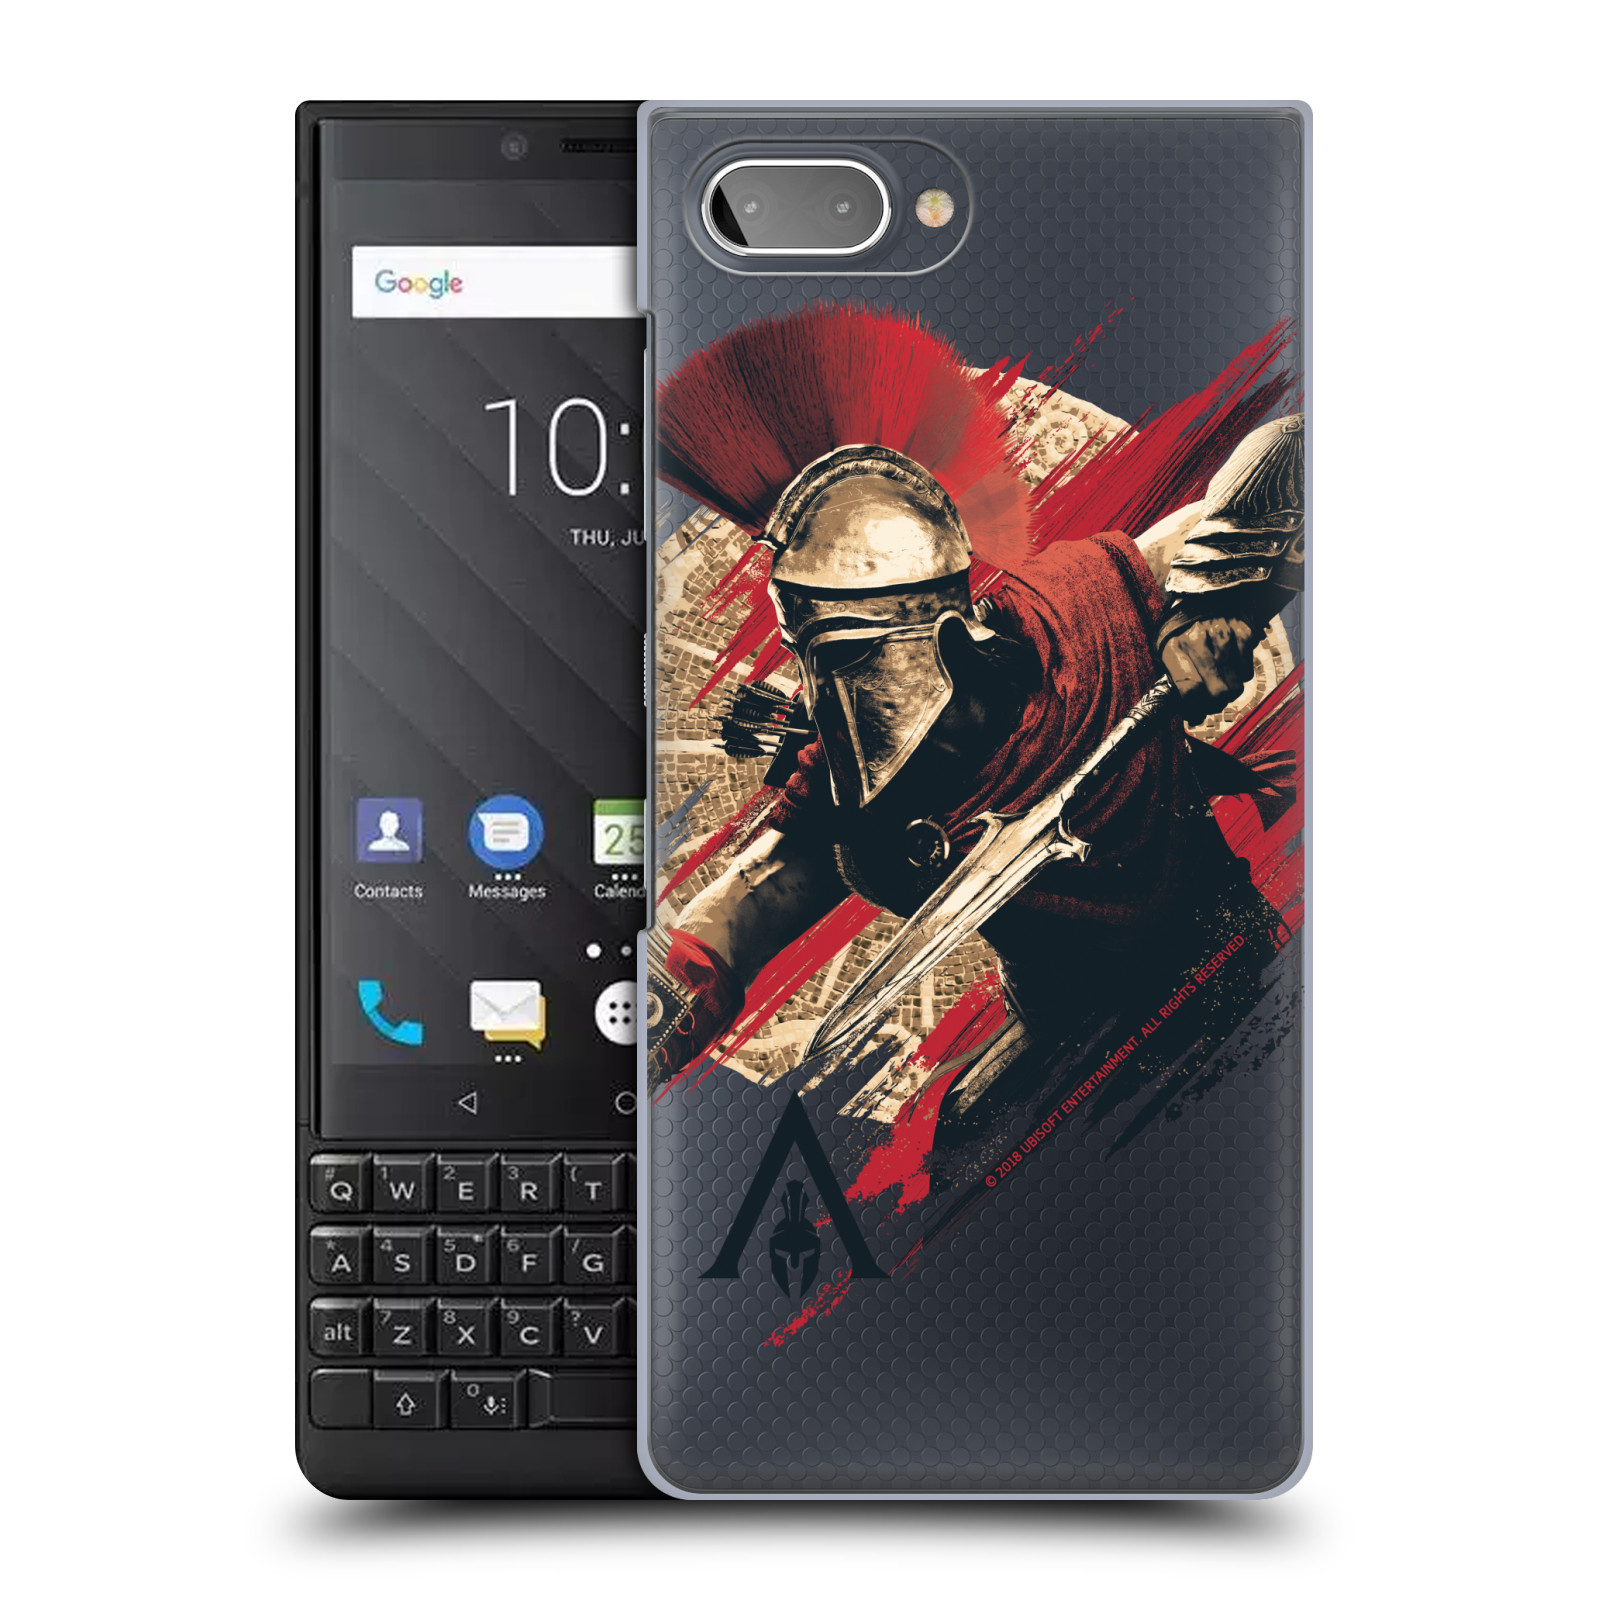 Pouzdro na mobil Blackberry KEY 2 - HEAD CASE - Assassins Creed Odyssey Alexios s oštěpem